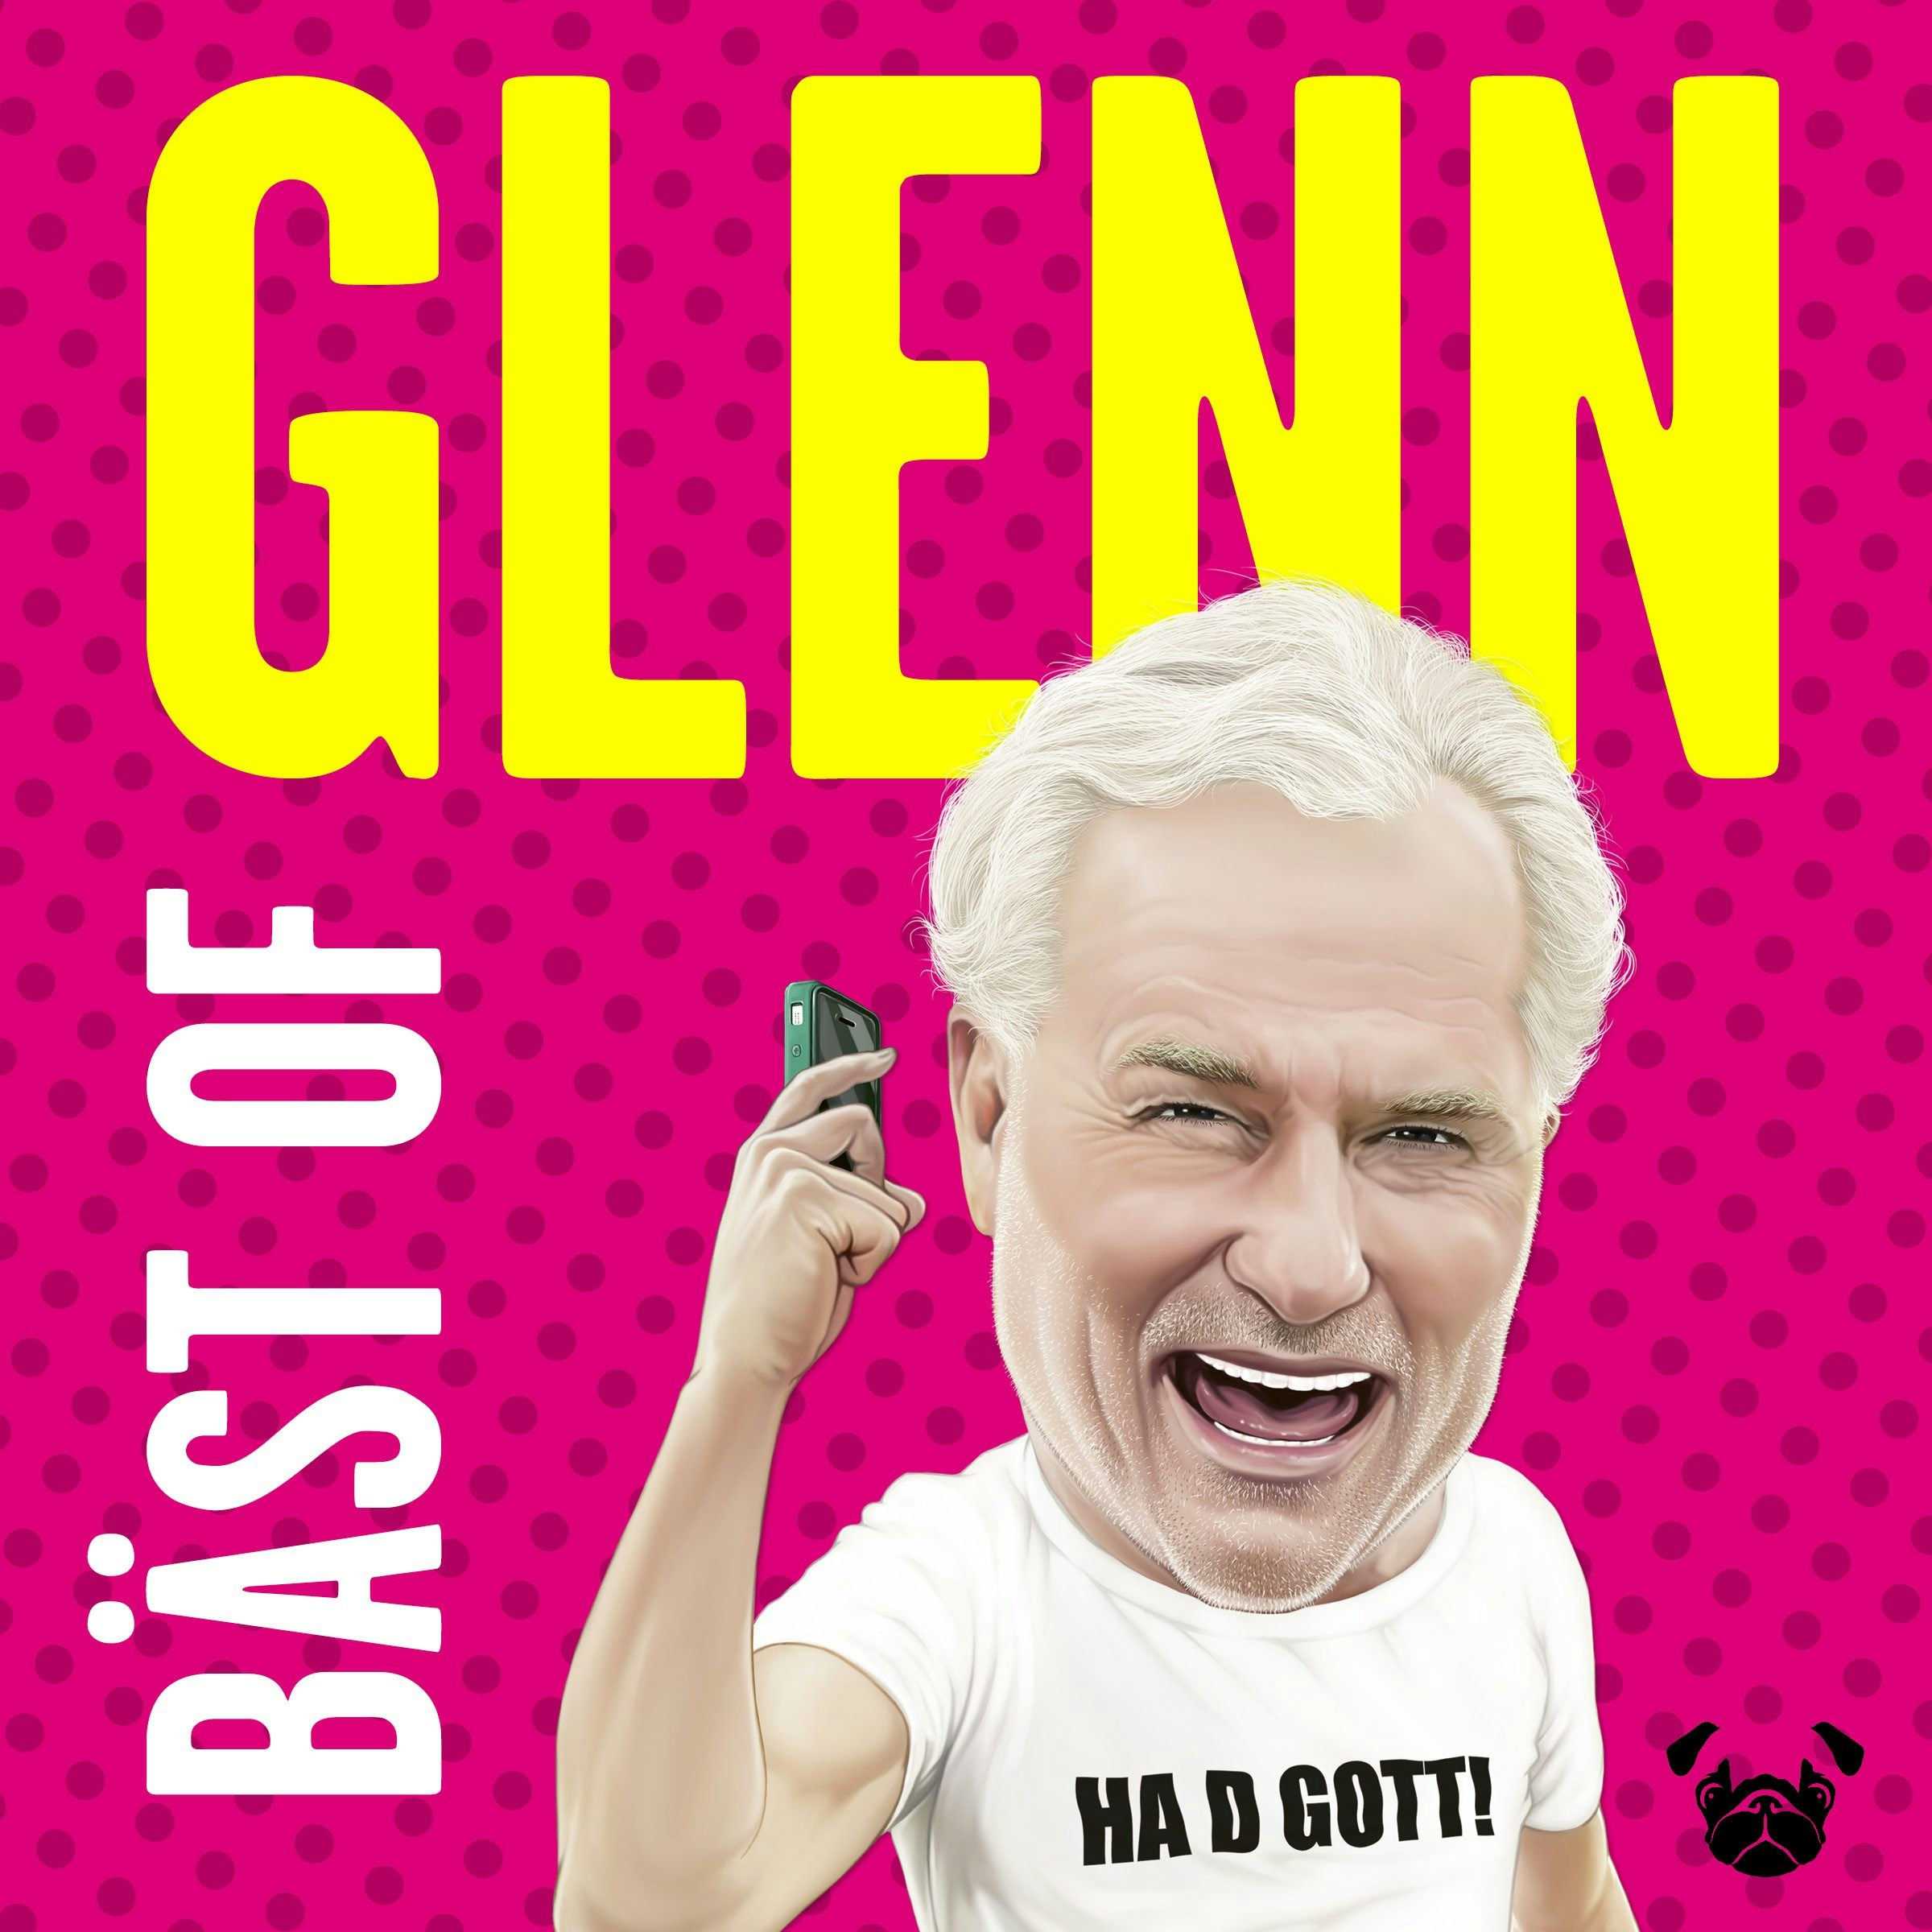 Bäst of Glenn : tankar och tweets från internets goaste gubbe